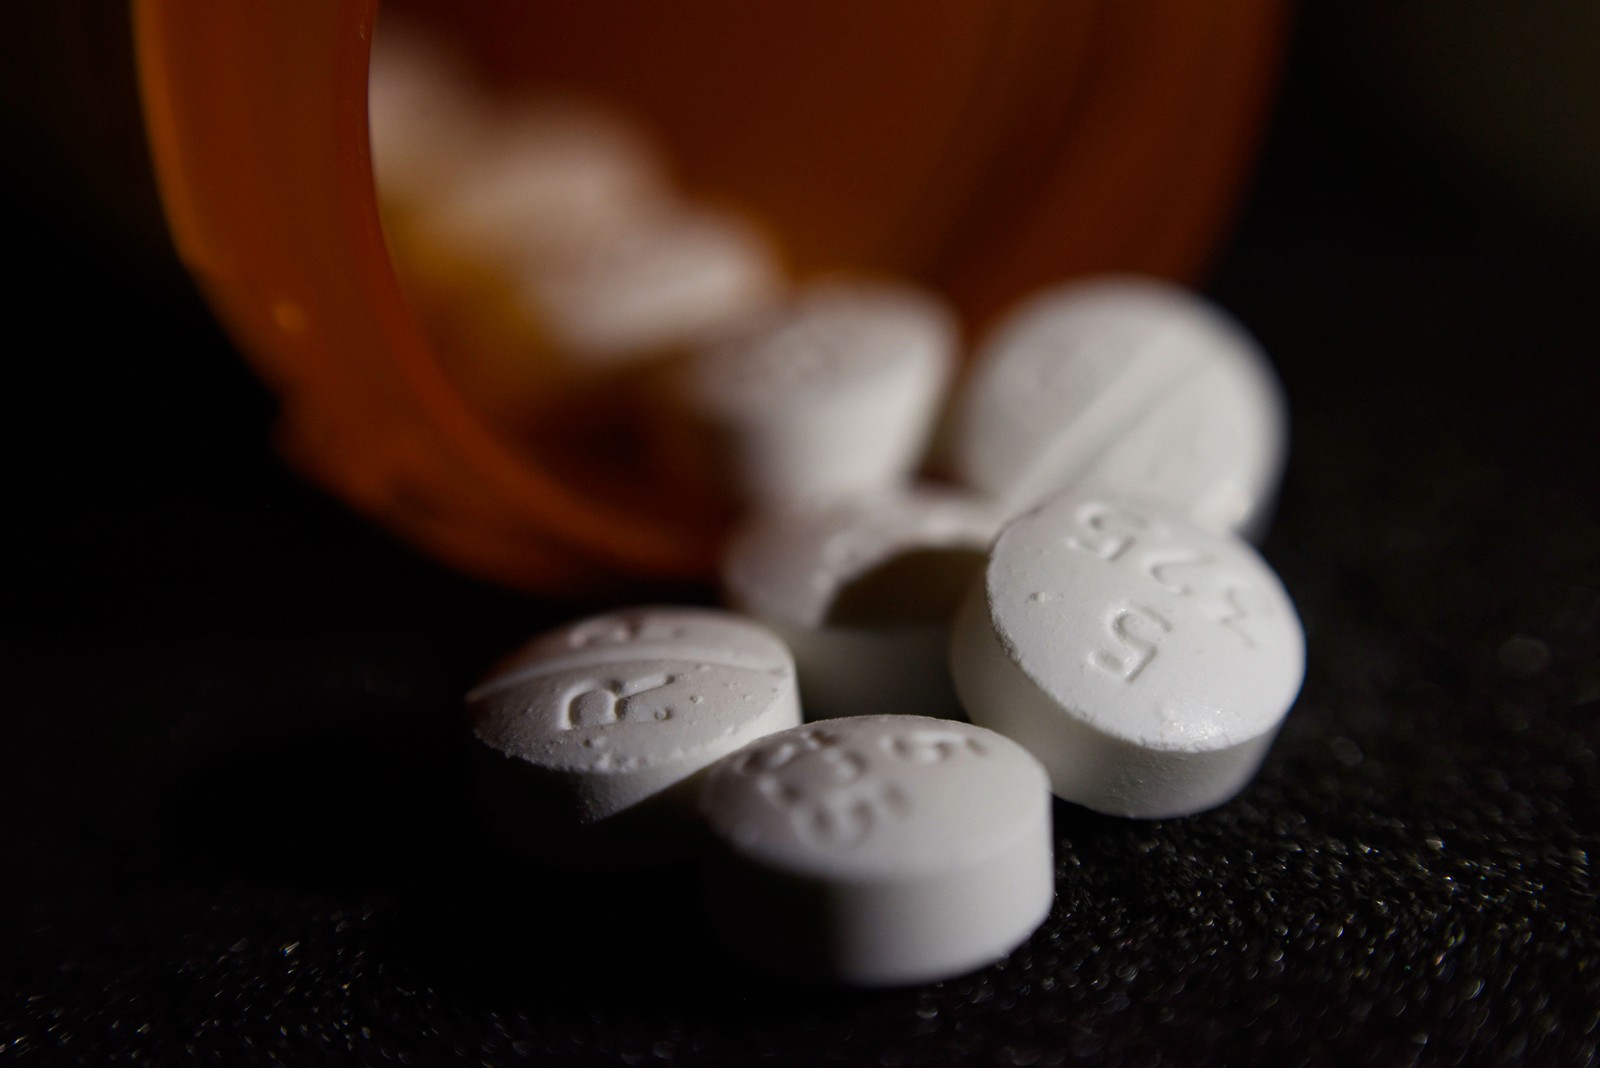 Mortes por overdose nos EUA batem recorde e chegam a quase 72 mil em 2017